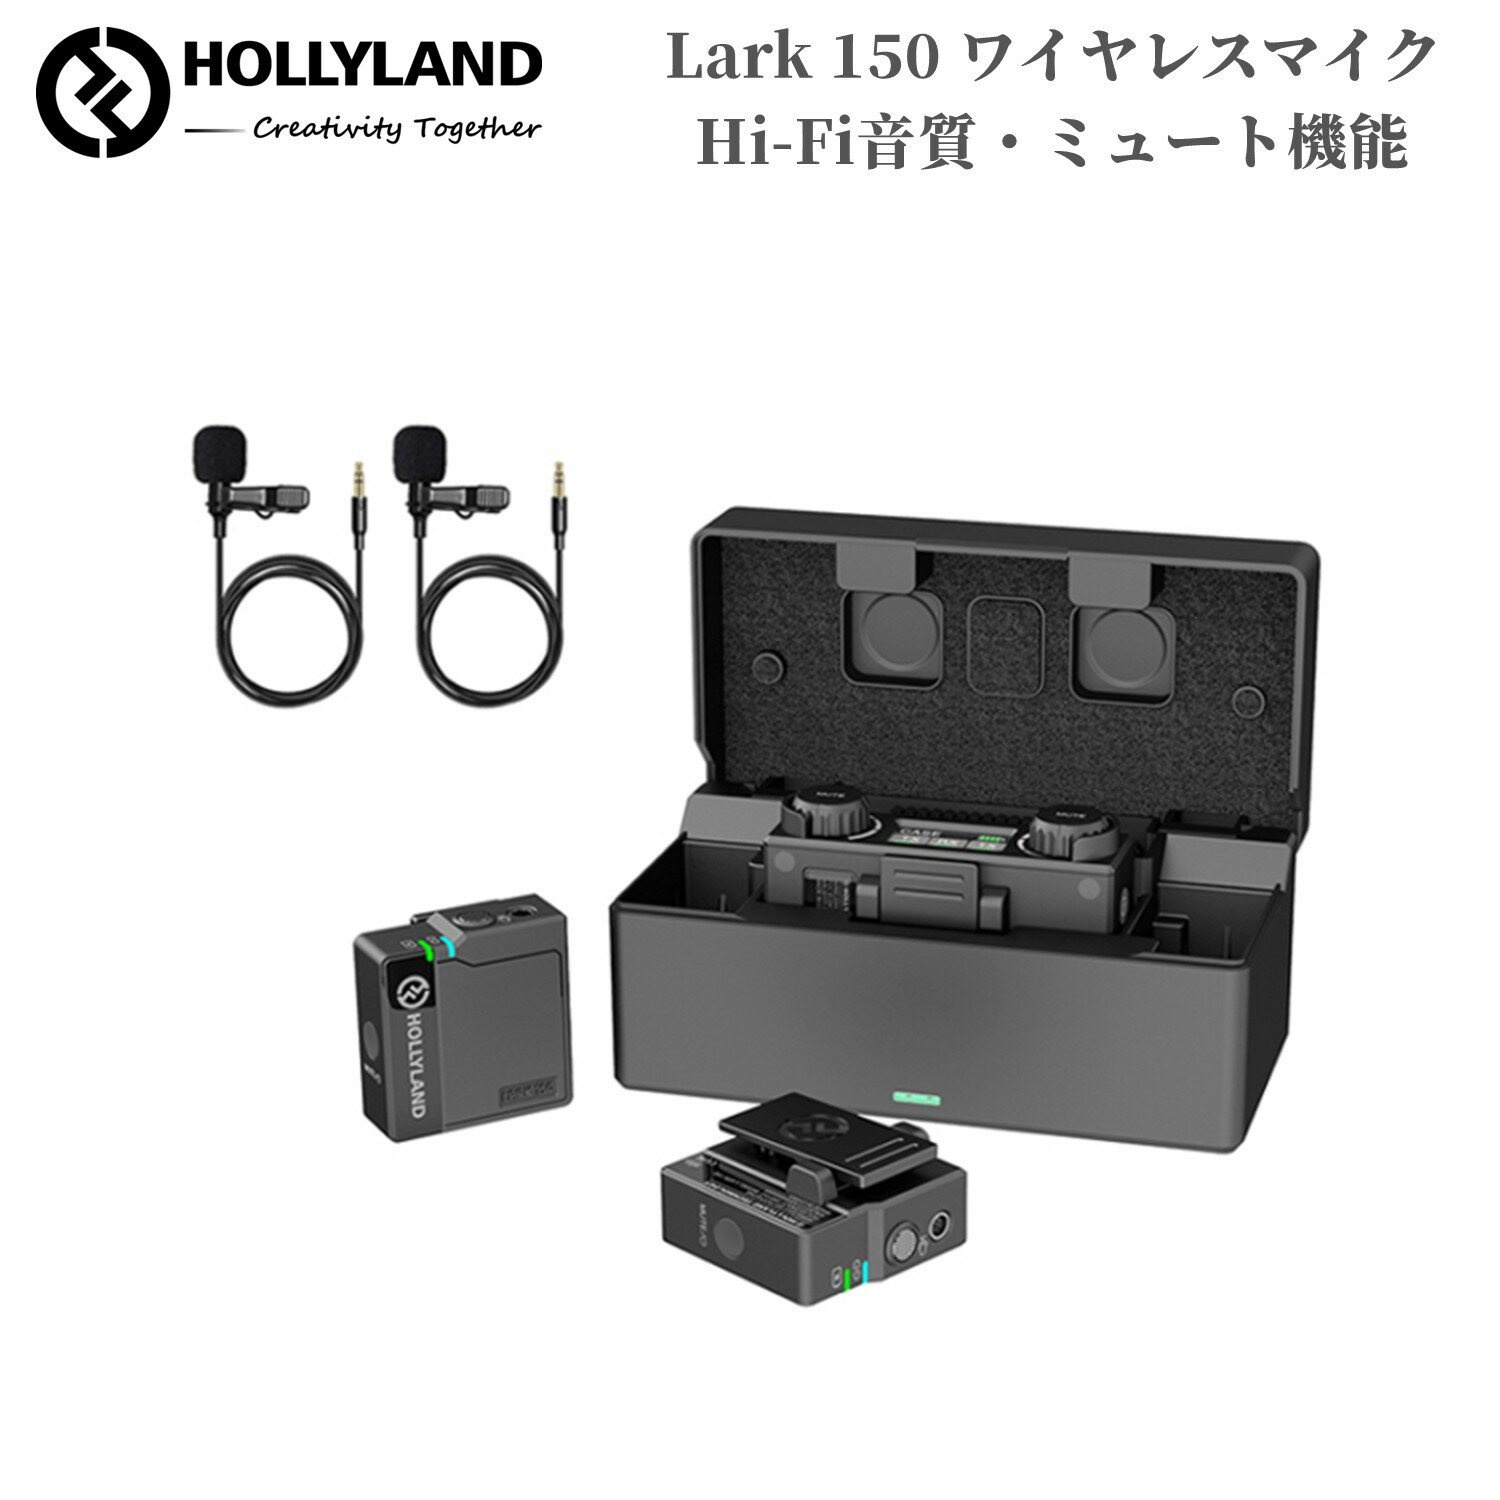 Hollyland Lark 150 ワイヤレスマイク スマホ外付けマイク ピンマイク ワイヤレス ミュート機能 収納充電ケース付き 100m伝送距離 自動ペアリング 三つの録音モード スマホ/カメラ/レコーダーなどに対応 ワイヤレス ラベリアマイク